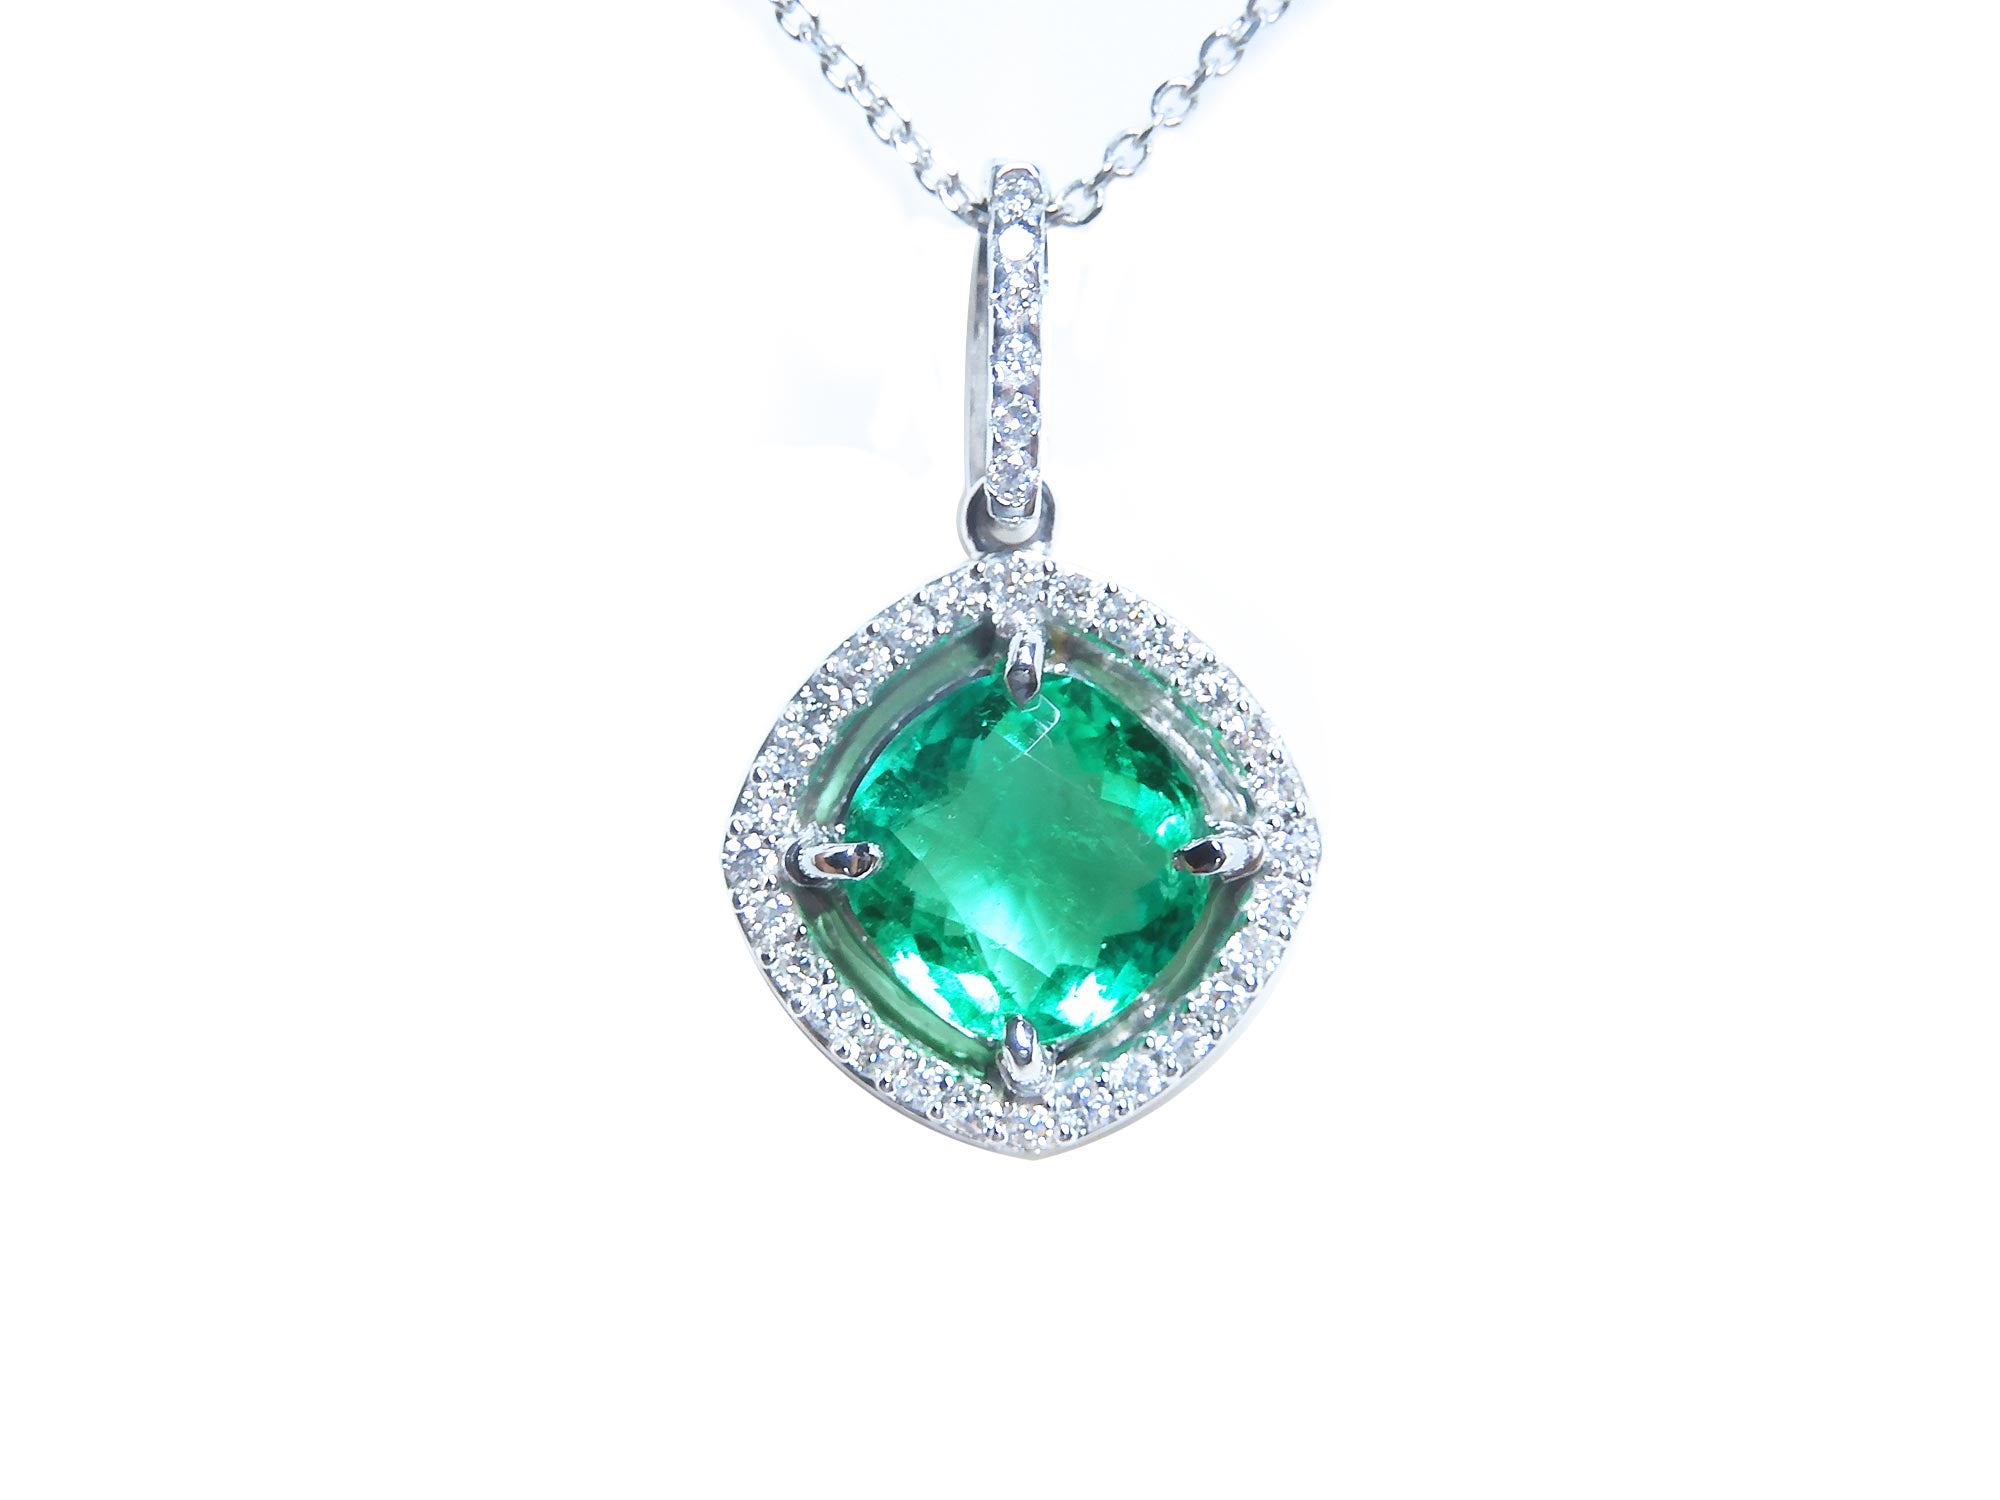 Genuine Colombian emerald pendant